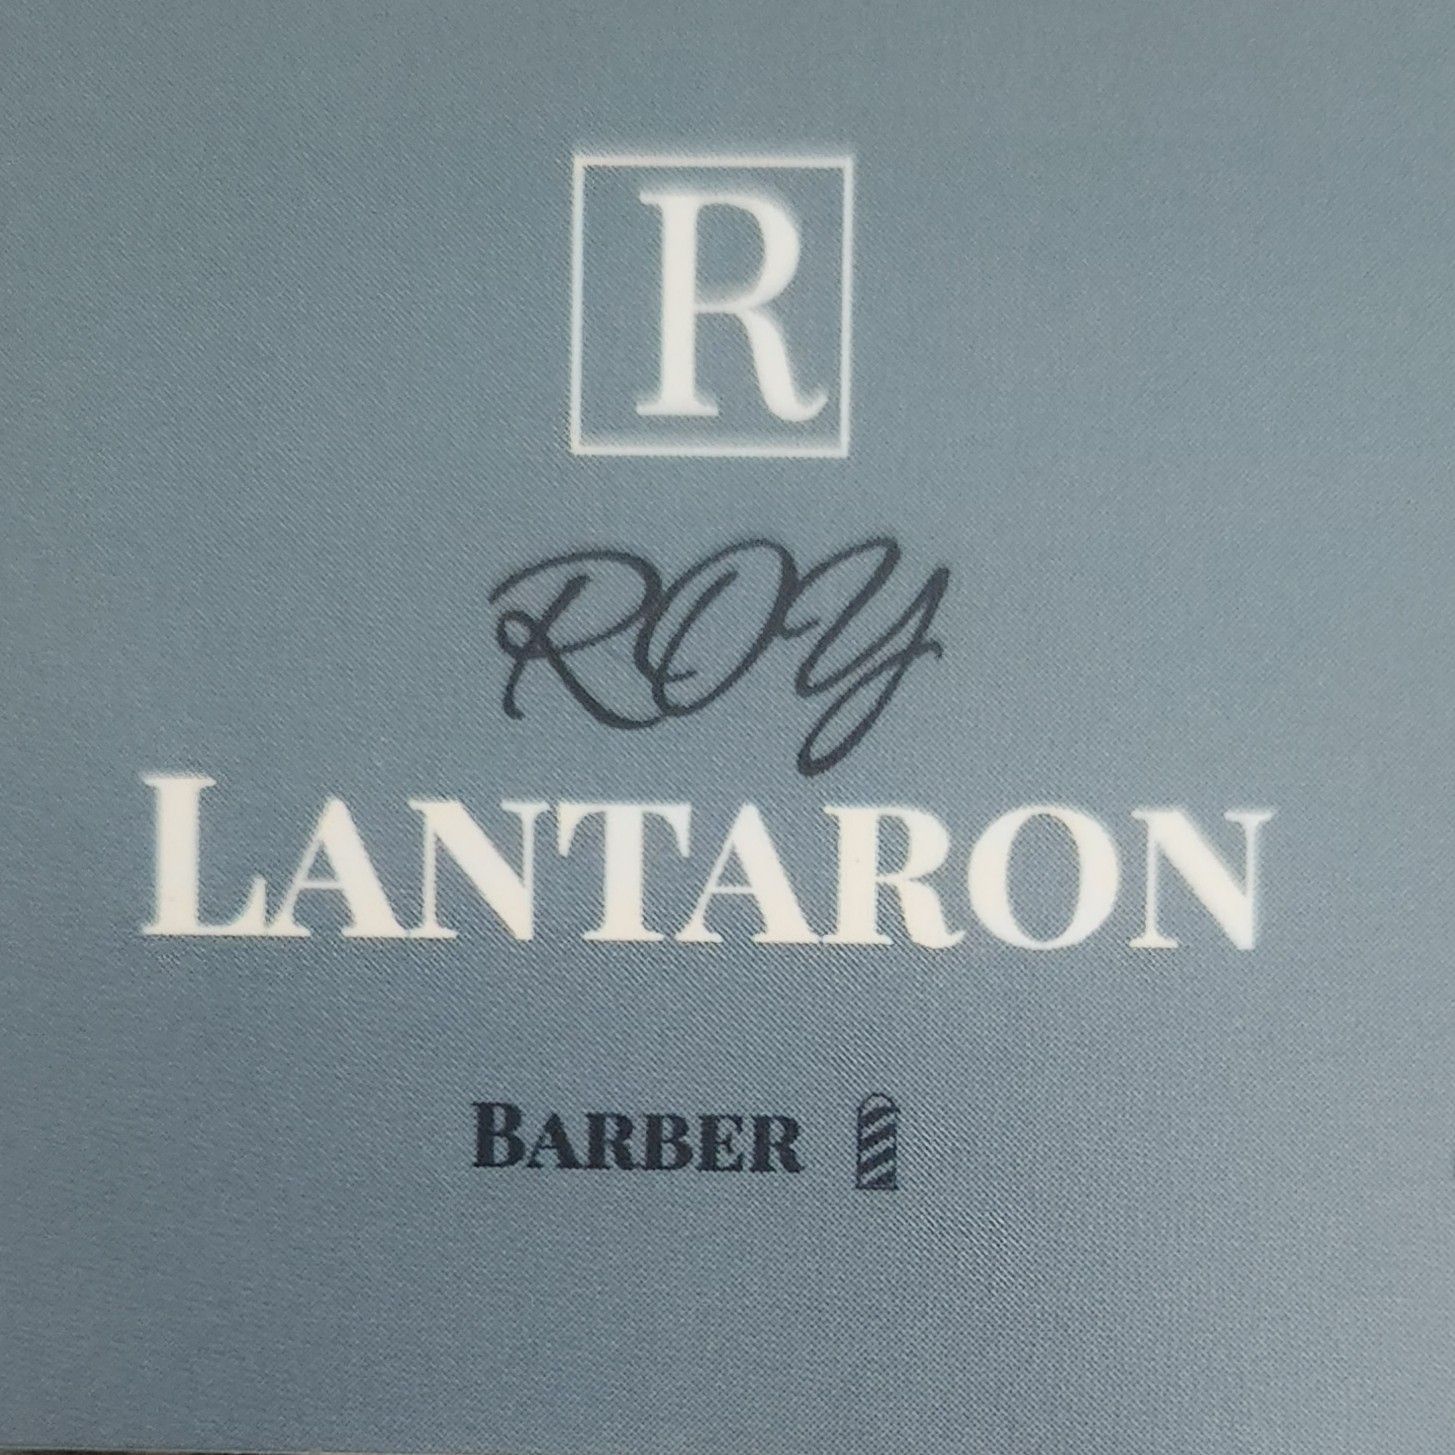 Roy Lantaron Barber, 3915 4th St NW, Albuquerque, 87107